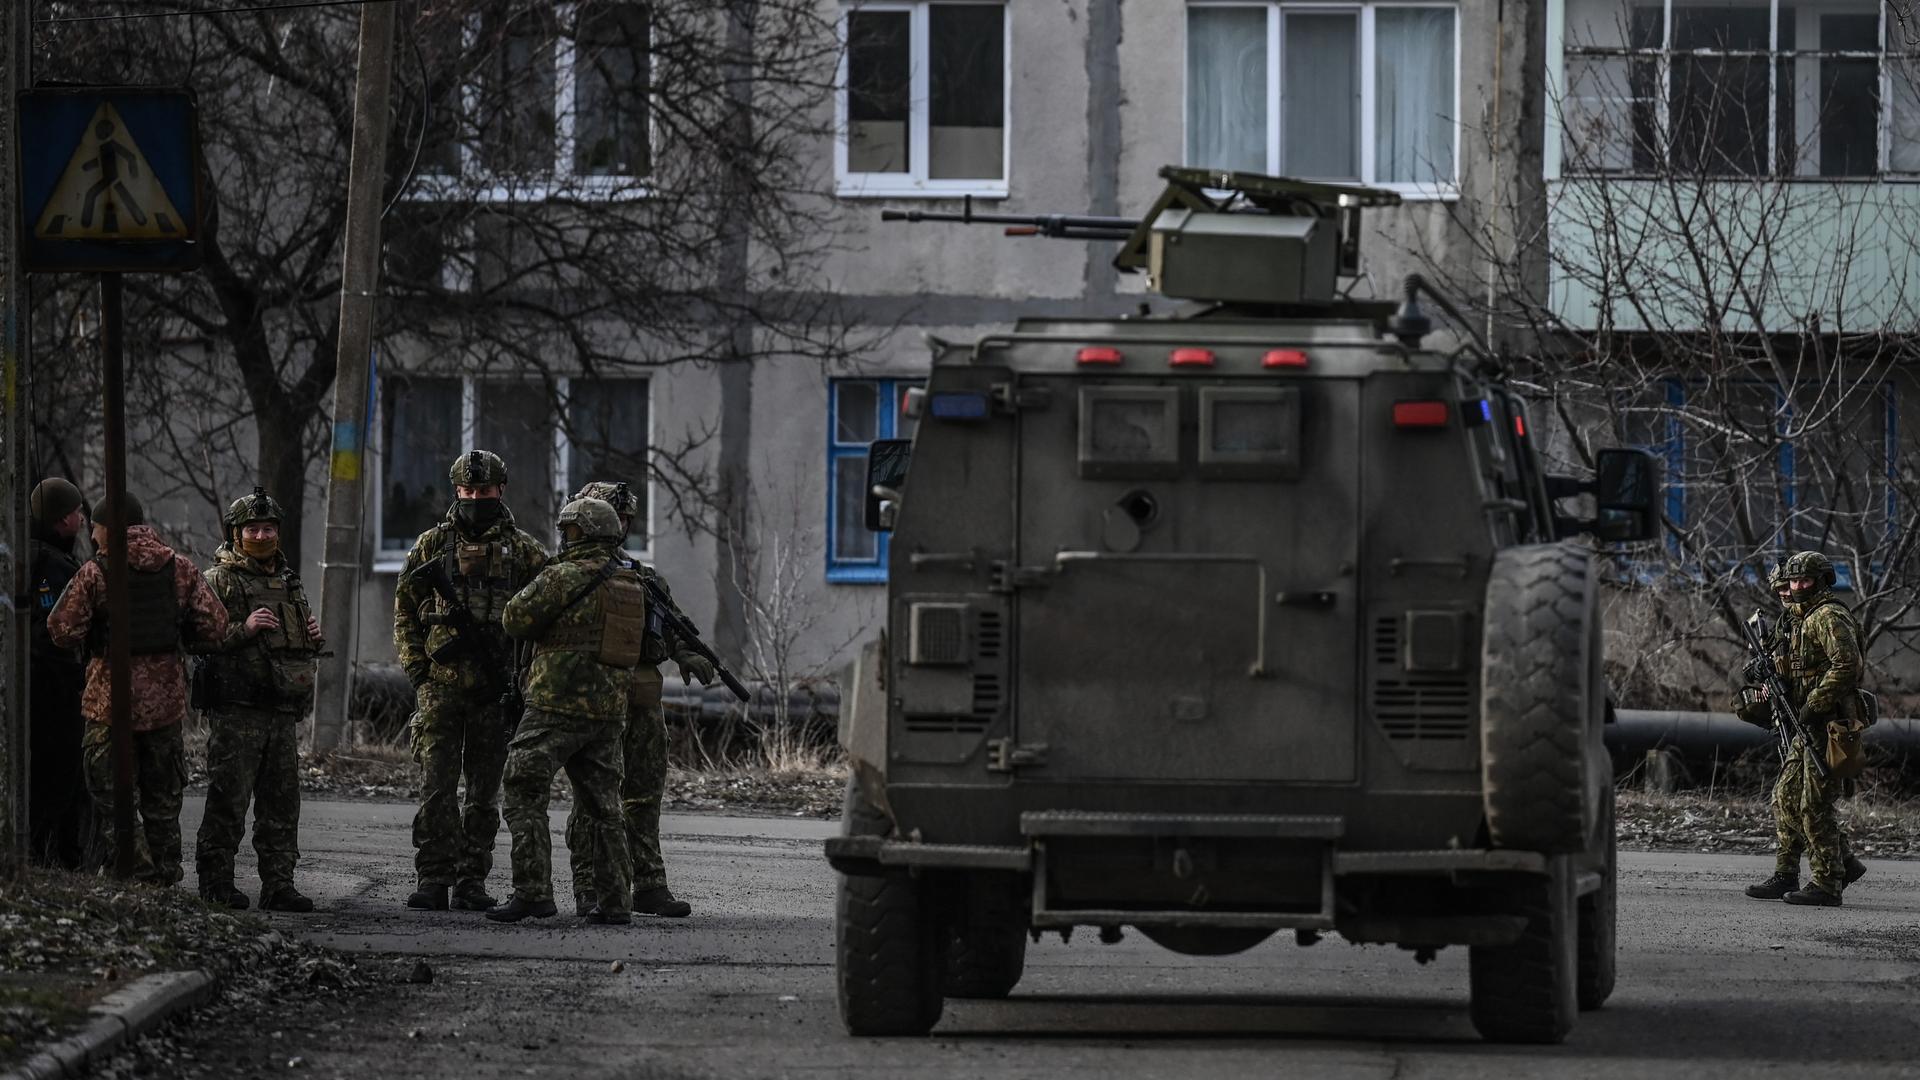 Ukrainische Truppen patroullieren am 19.2.2022 in der Stadt Nowoluhanske im Bezirk Donezk.